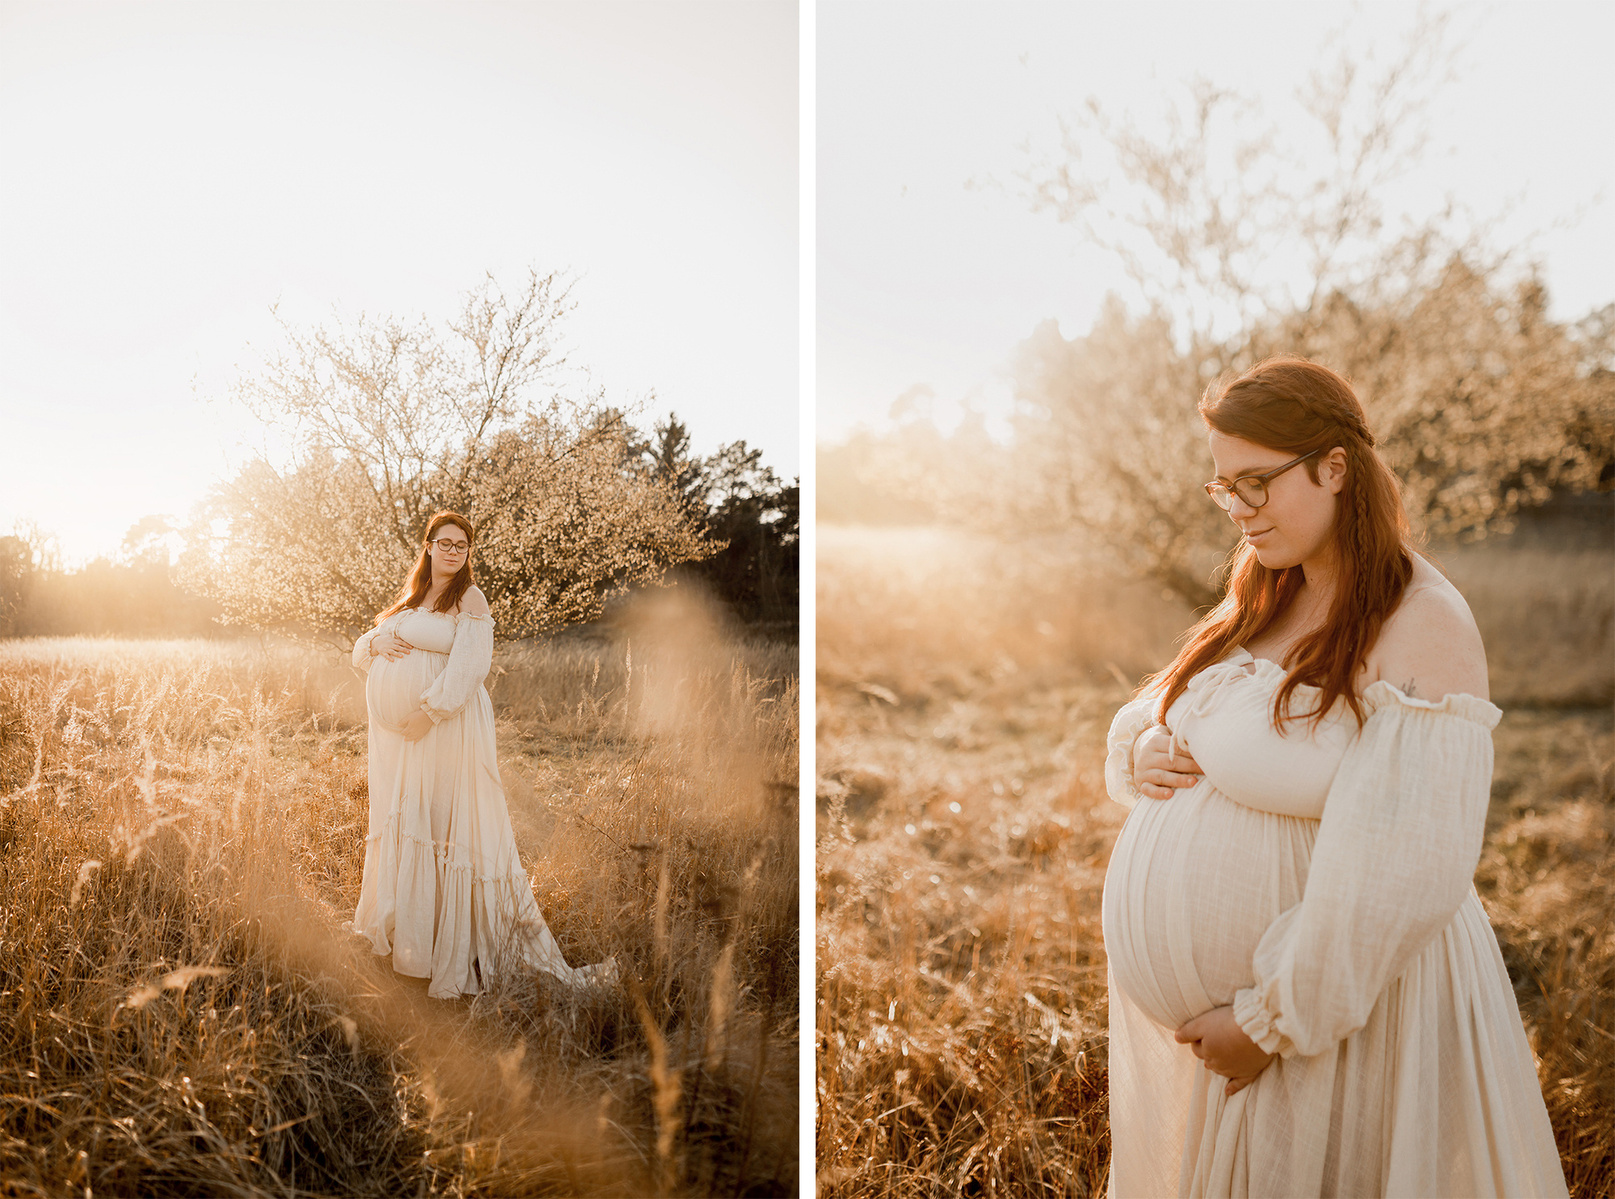 Collage von einem frühlingshaften Babybauchshooting in der Natur. Eine schwangere Frau im weißen Bohokleid steht vor einem blühenden Baum. 